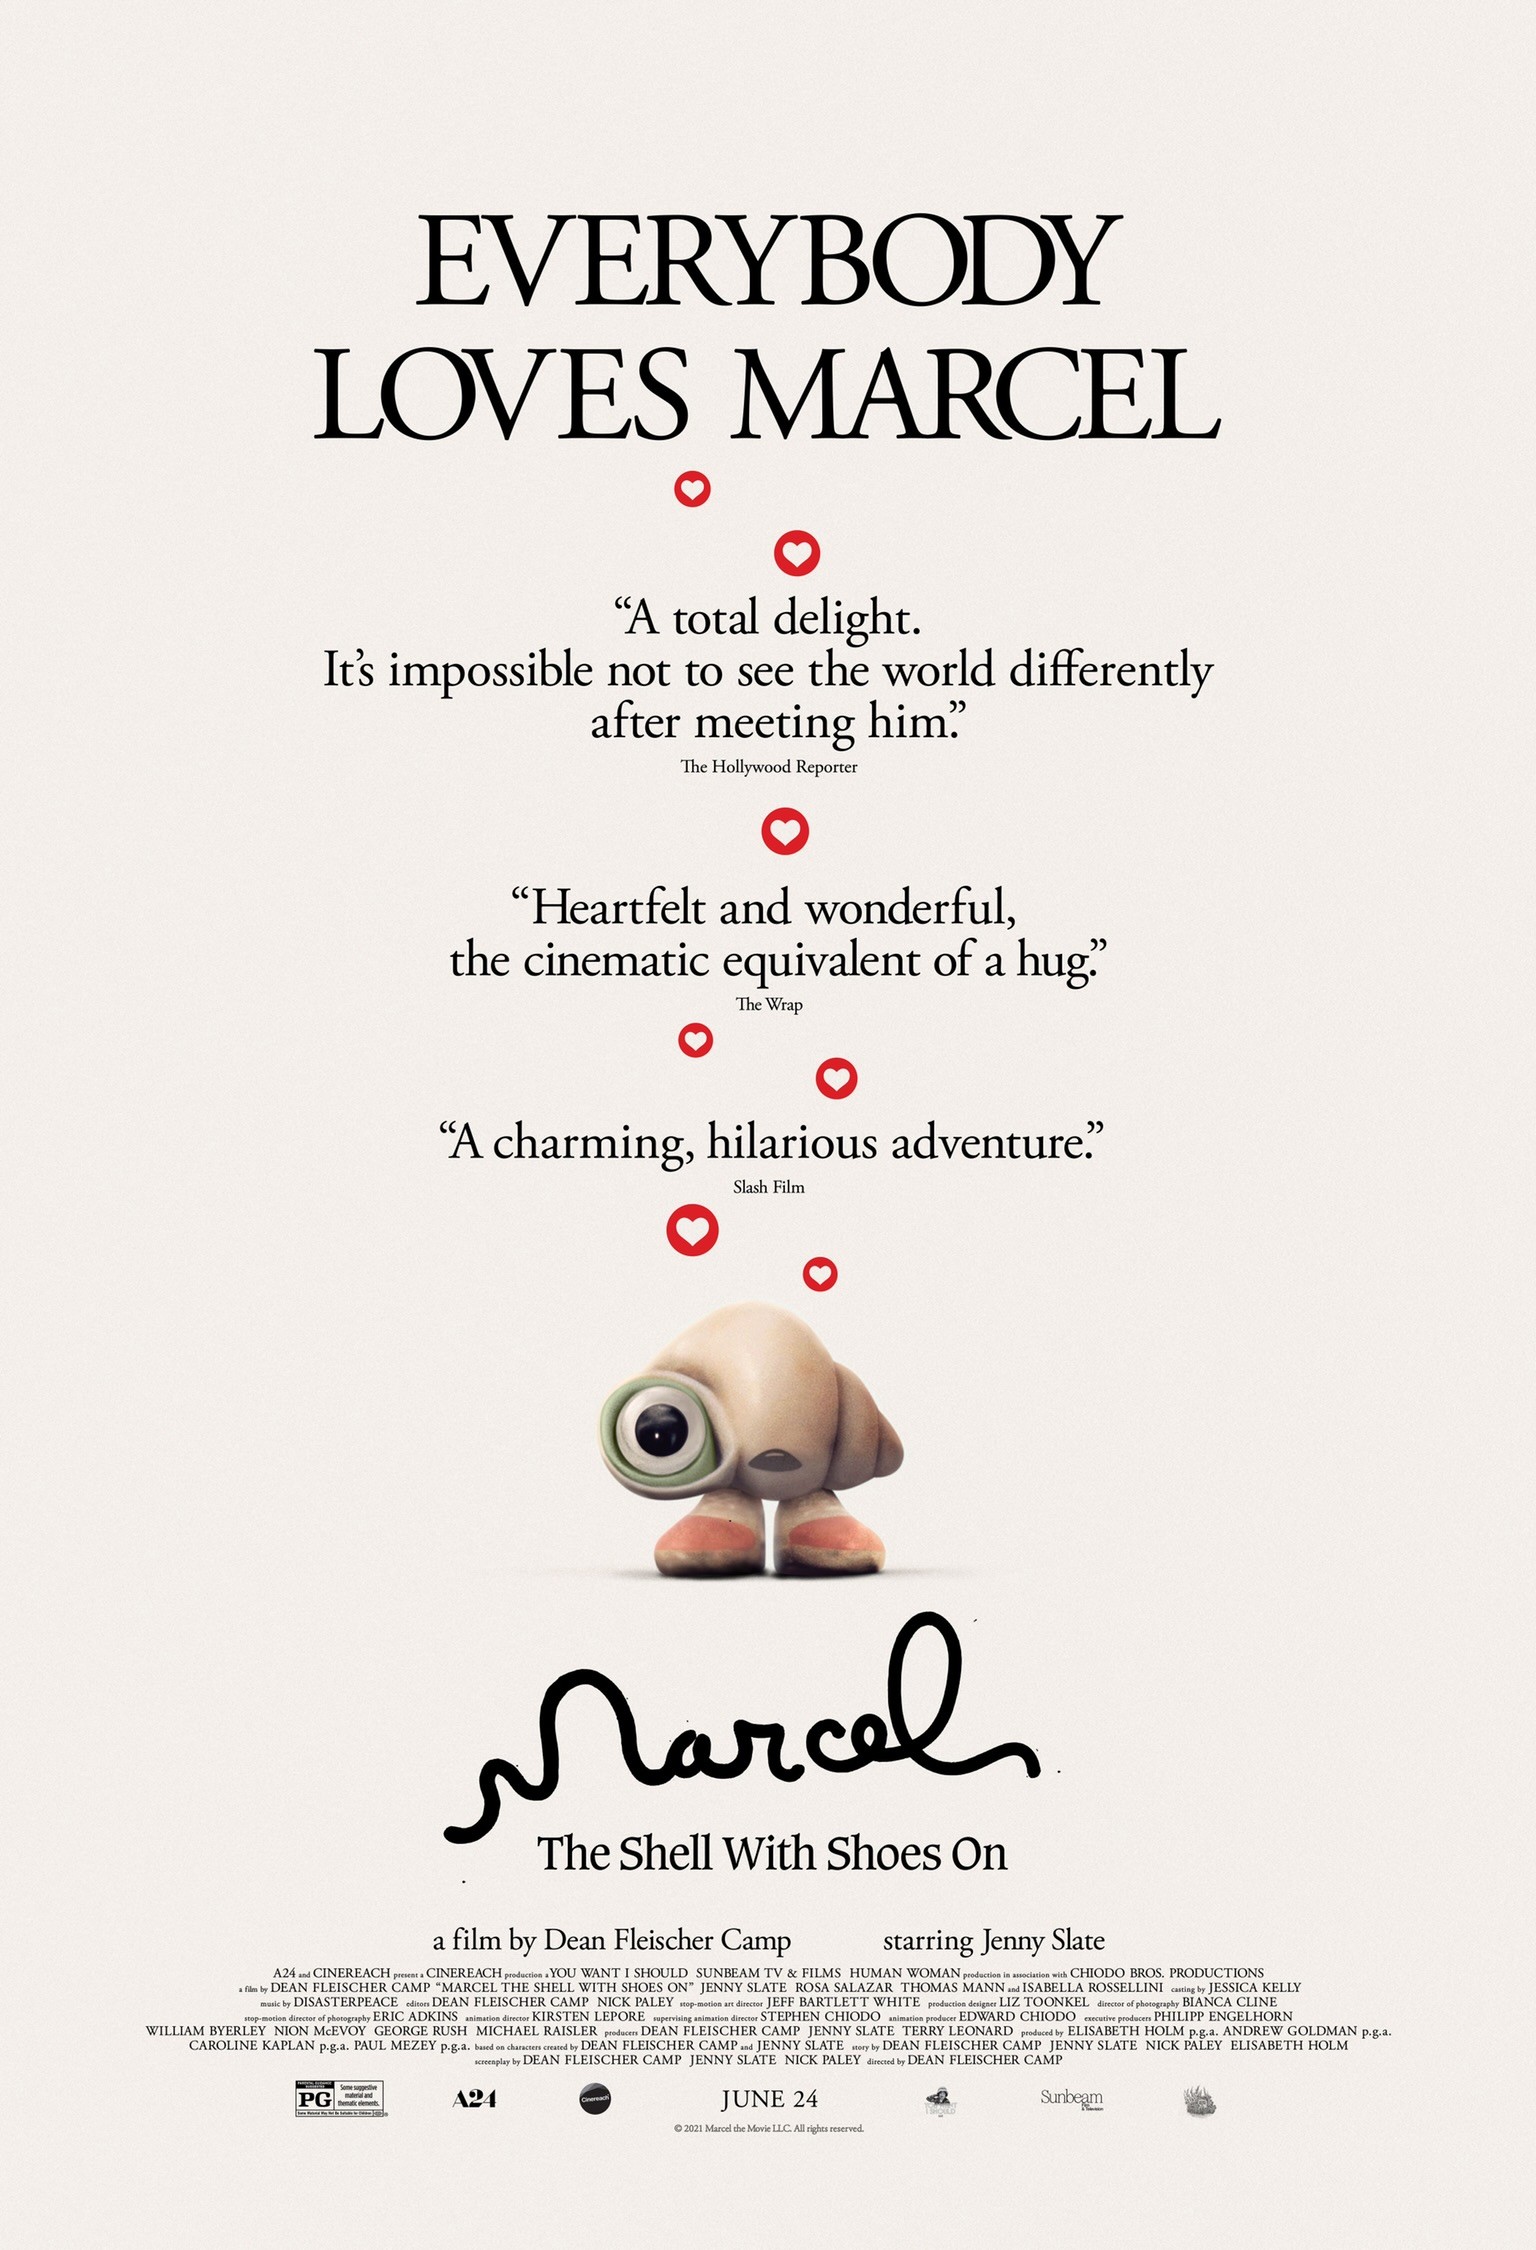 Марсель, ракушка в ботинках / Marcel the Shell with Shoes On (2021) отзывы. Рецензии. Новости кино. Актеры фильма Марсель, ракушка в ботинках. Отзывы о фильме Марсель, ракушка в ботинках